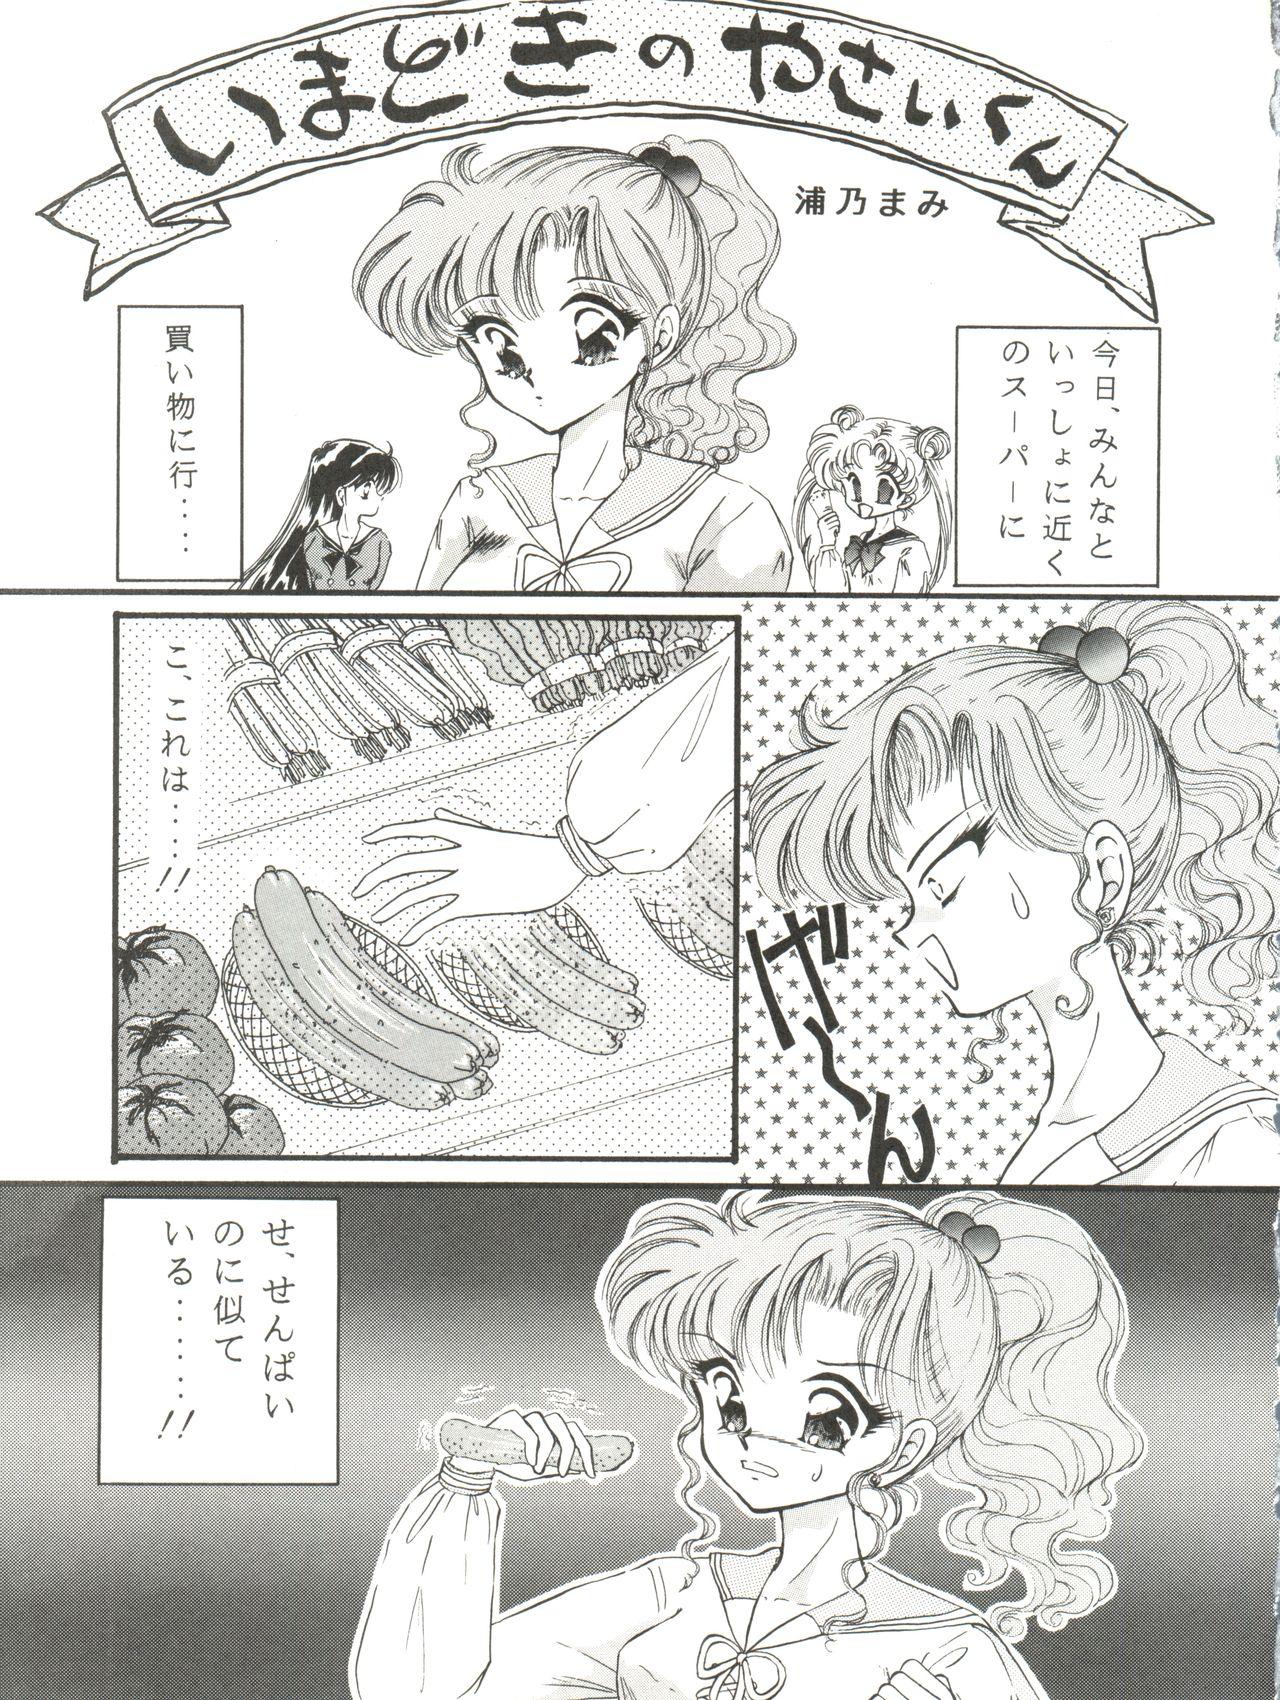 Oralsex Kangethu Hien Vol. 5 - Sailor moon Porn - Page 5